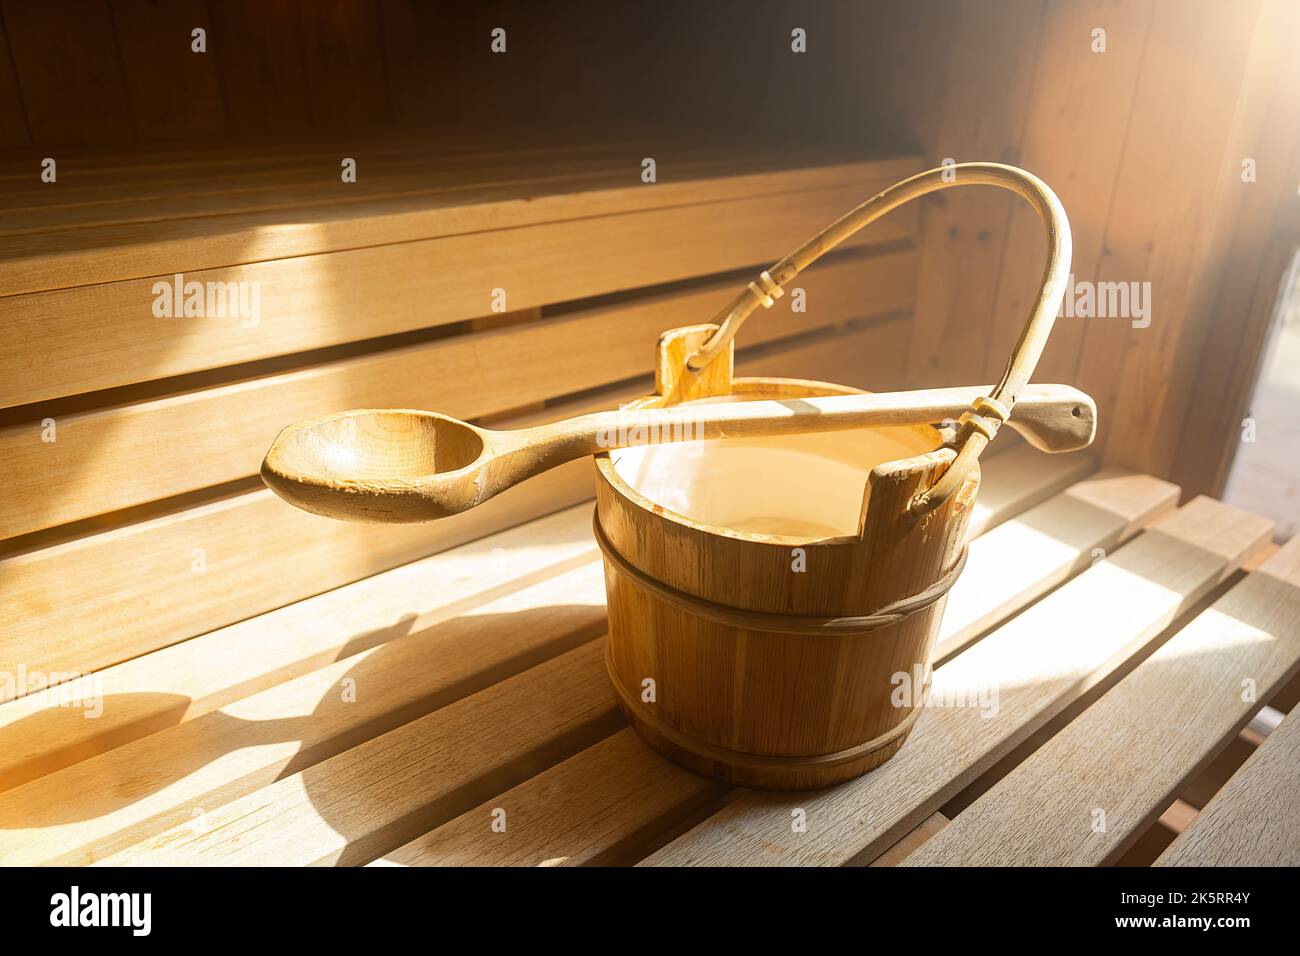 Secchio d'acqua con cucchiaio di legno per versare acqua su pietre calde nella sauna finlandese, spa e bagno termale a temperatura calda immagine concettuale. Foto Stock